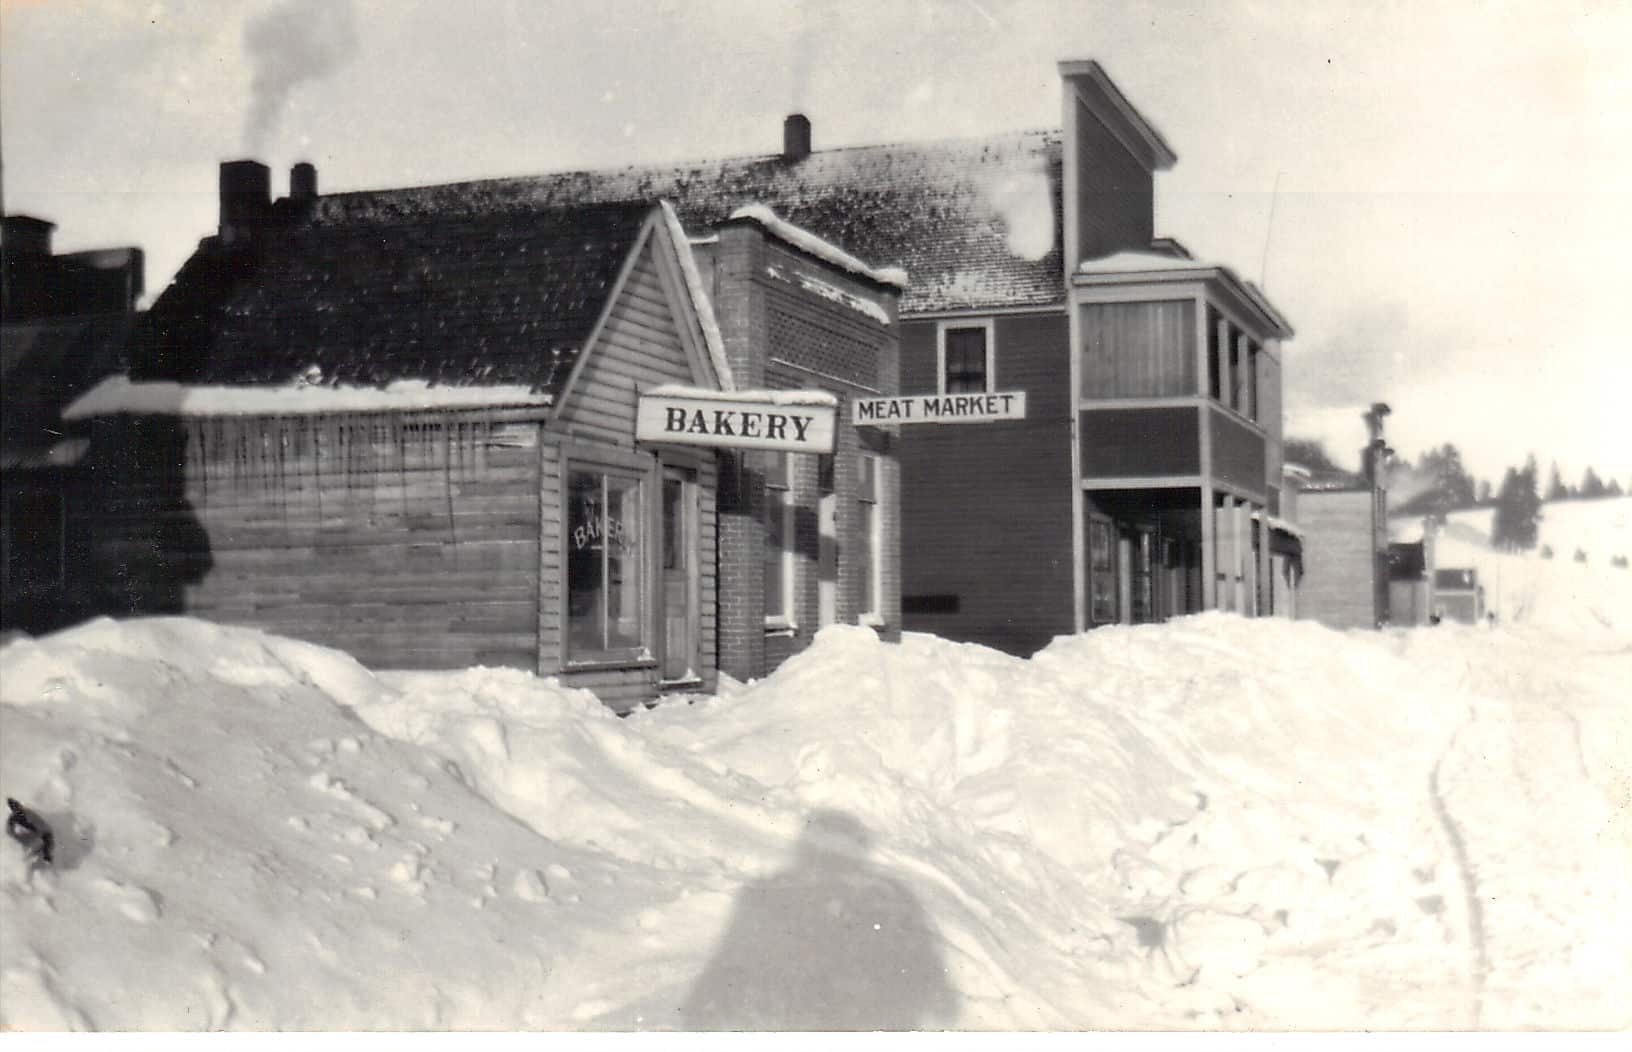 An old clapboard bakery on a snowy street in Idaho.